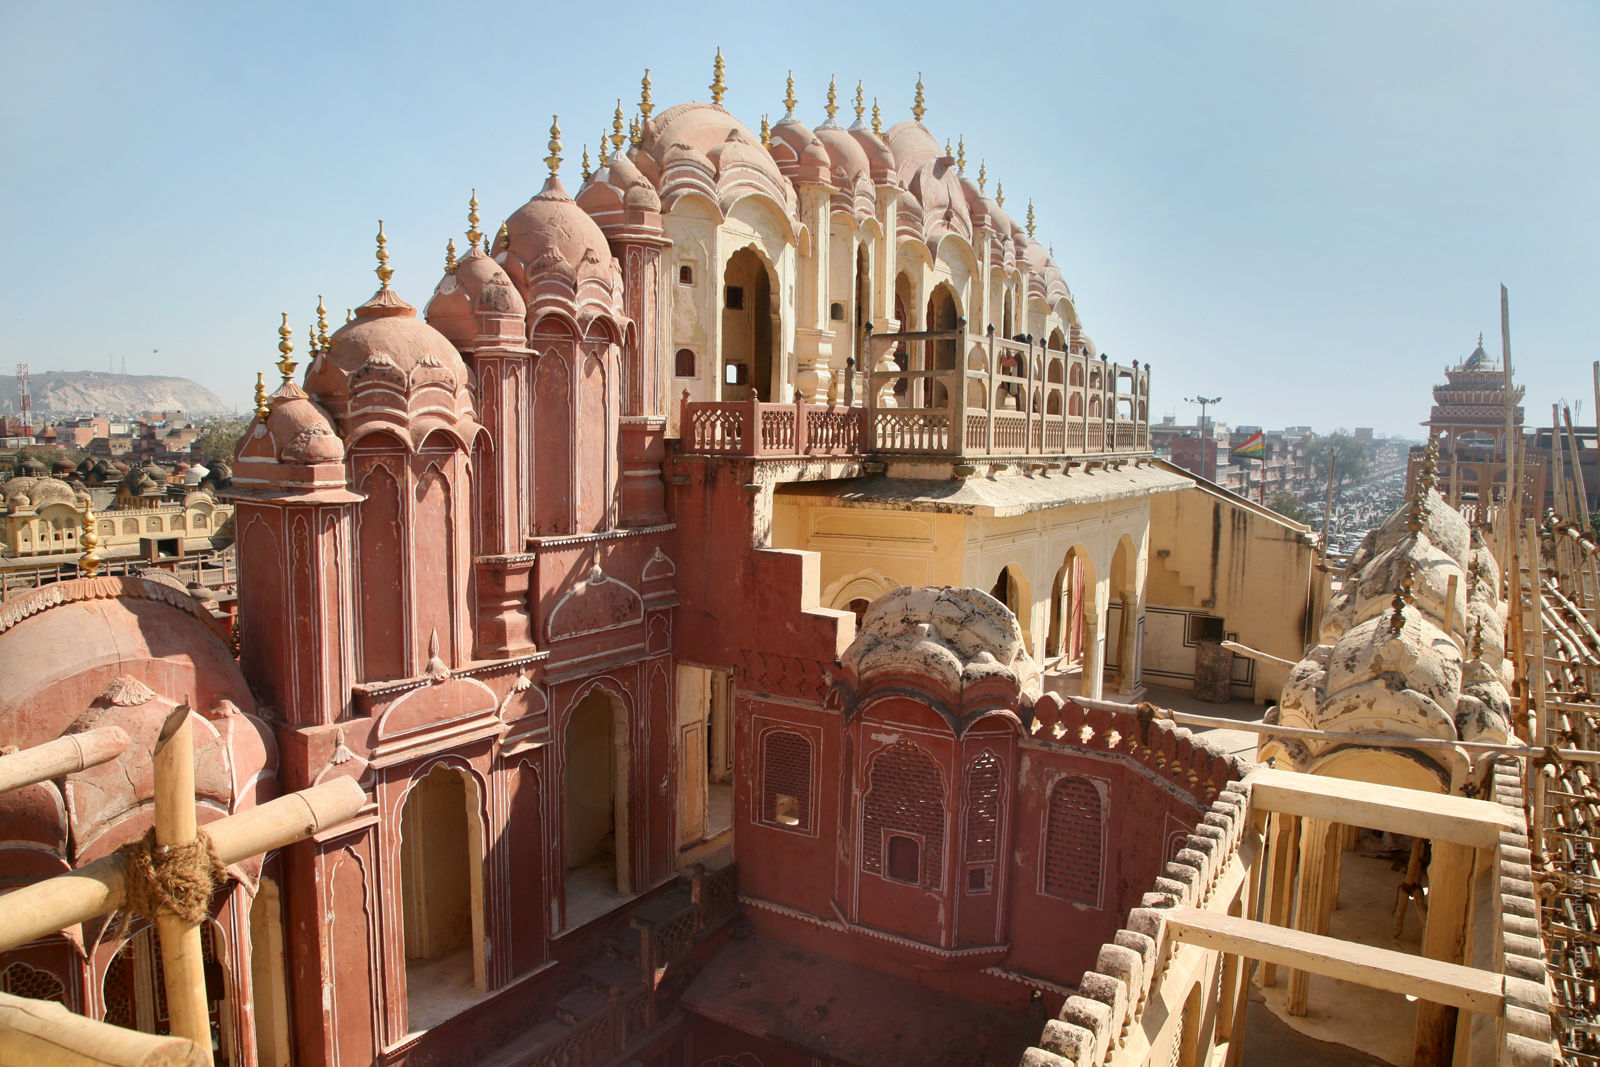 Дворец Ветров Хава-Махал, Джайпур, тур по Индии, 2017 год.